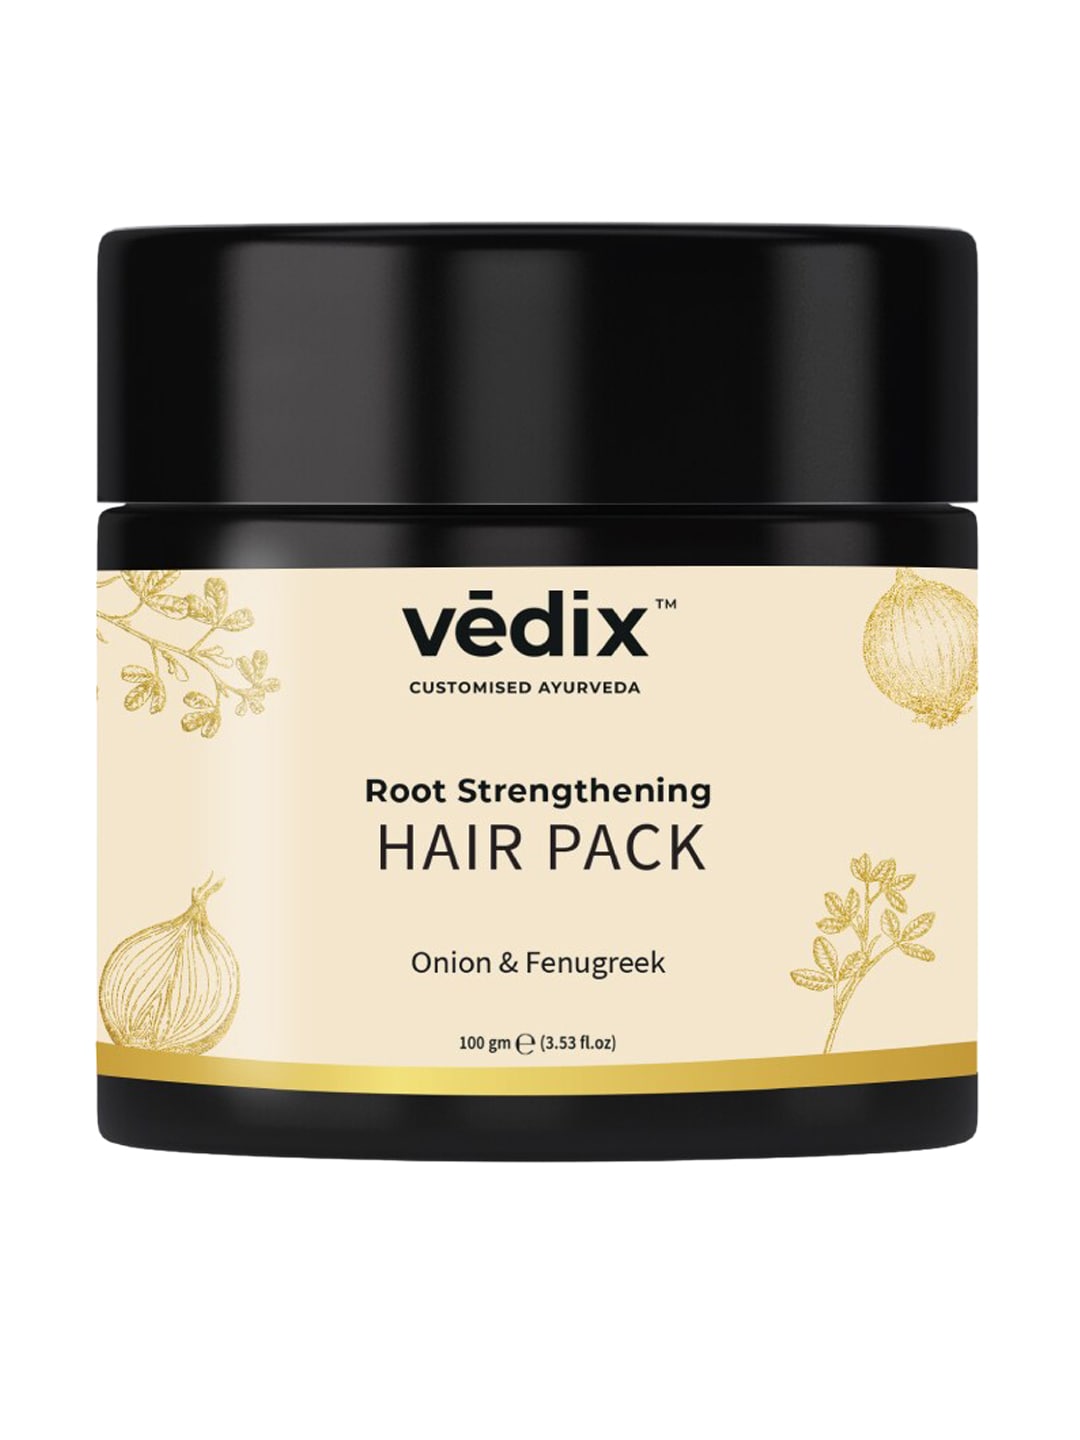 VEDIX Customised Ayurveda Onion & Fenugreek Root Strengthening Hair Pack Powder 100 gm Price in India